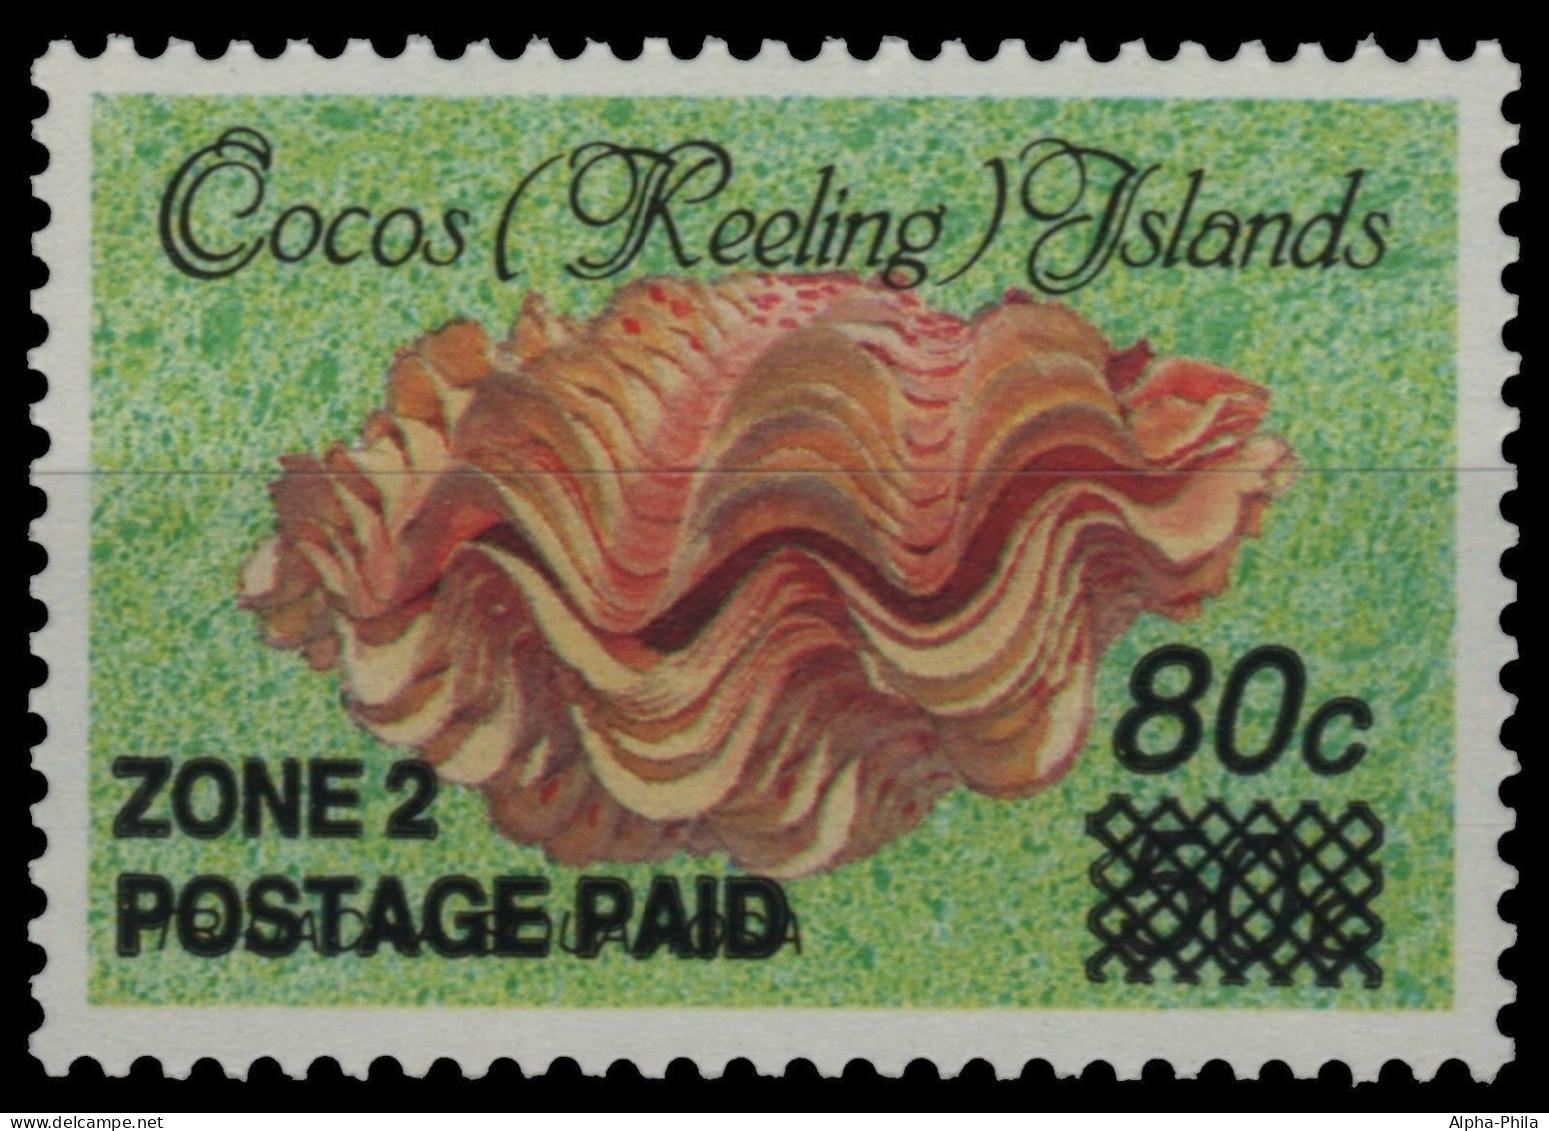 Kokos-Inseln 1991 - Mi-Nr. 243 ** - MNH - Meeresschnecken / Marine Snails - Cocos (Keeling) Islands